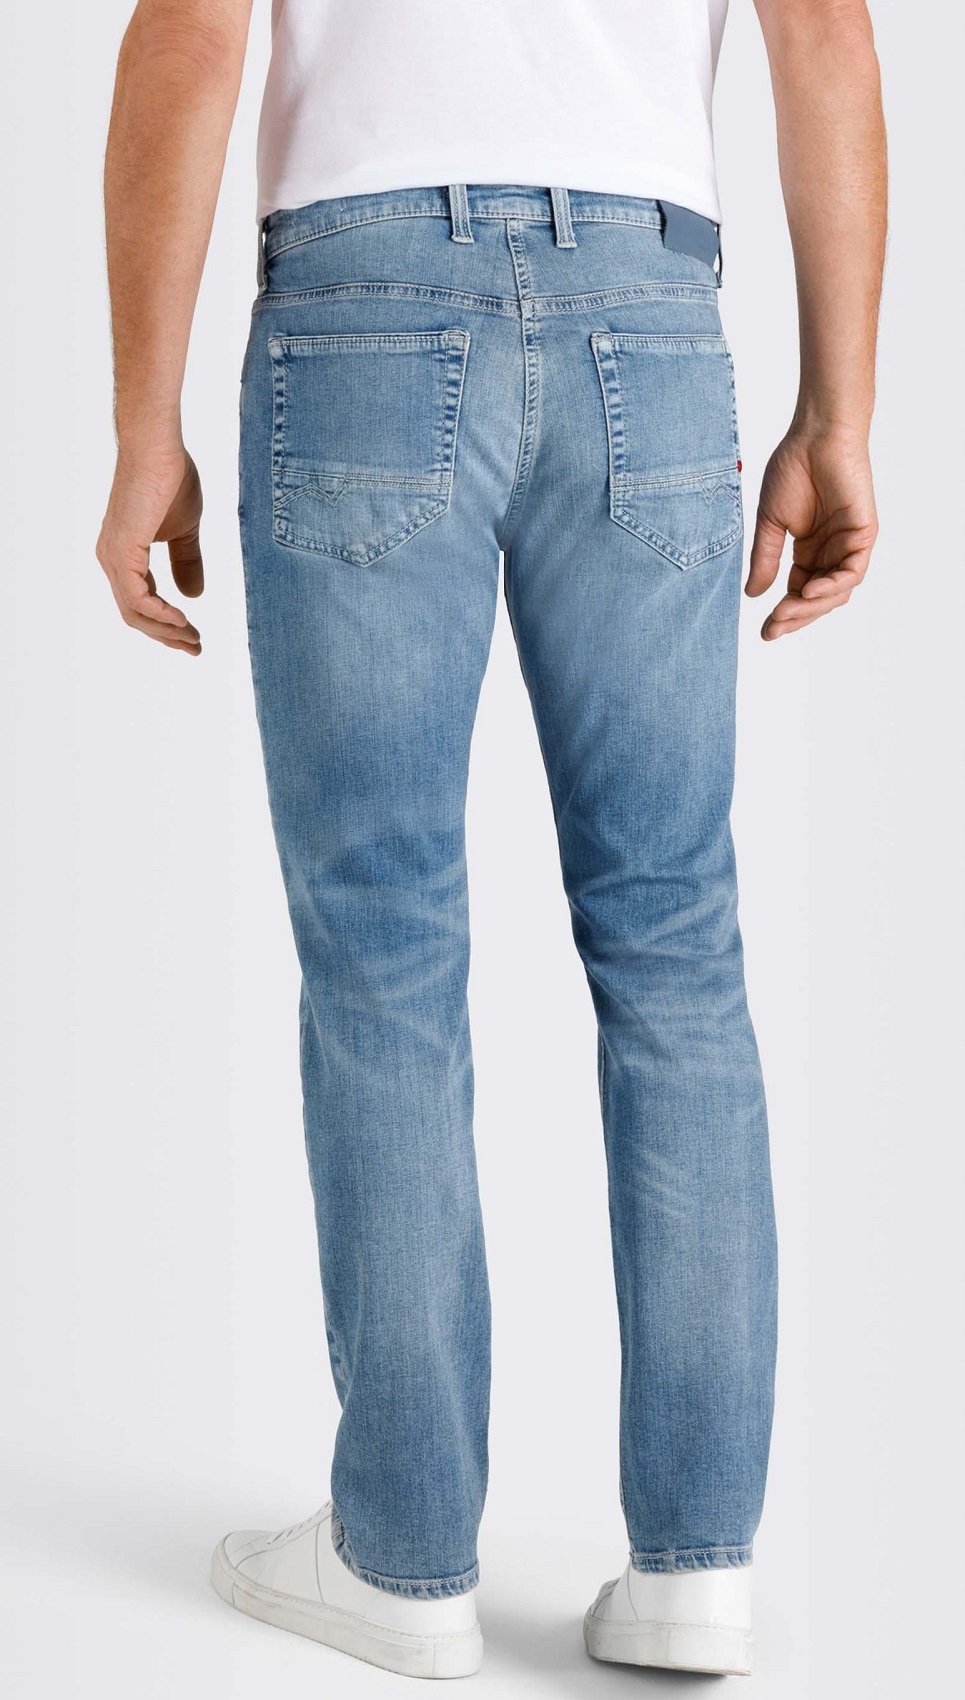 MAC Herren-Jeans, Arne Pipe, schmale 5-Pocket Jeans mit bequemer Leibhoehe  | GioMilano